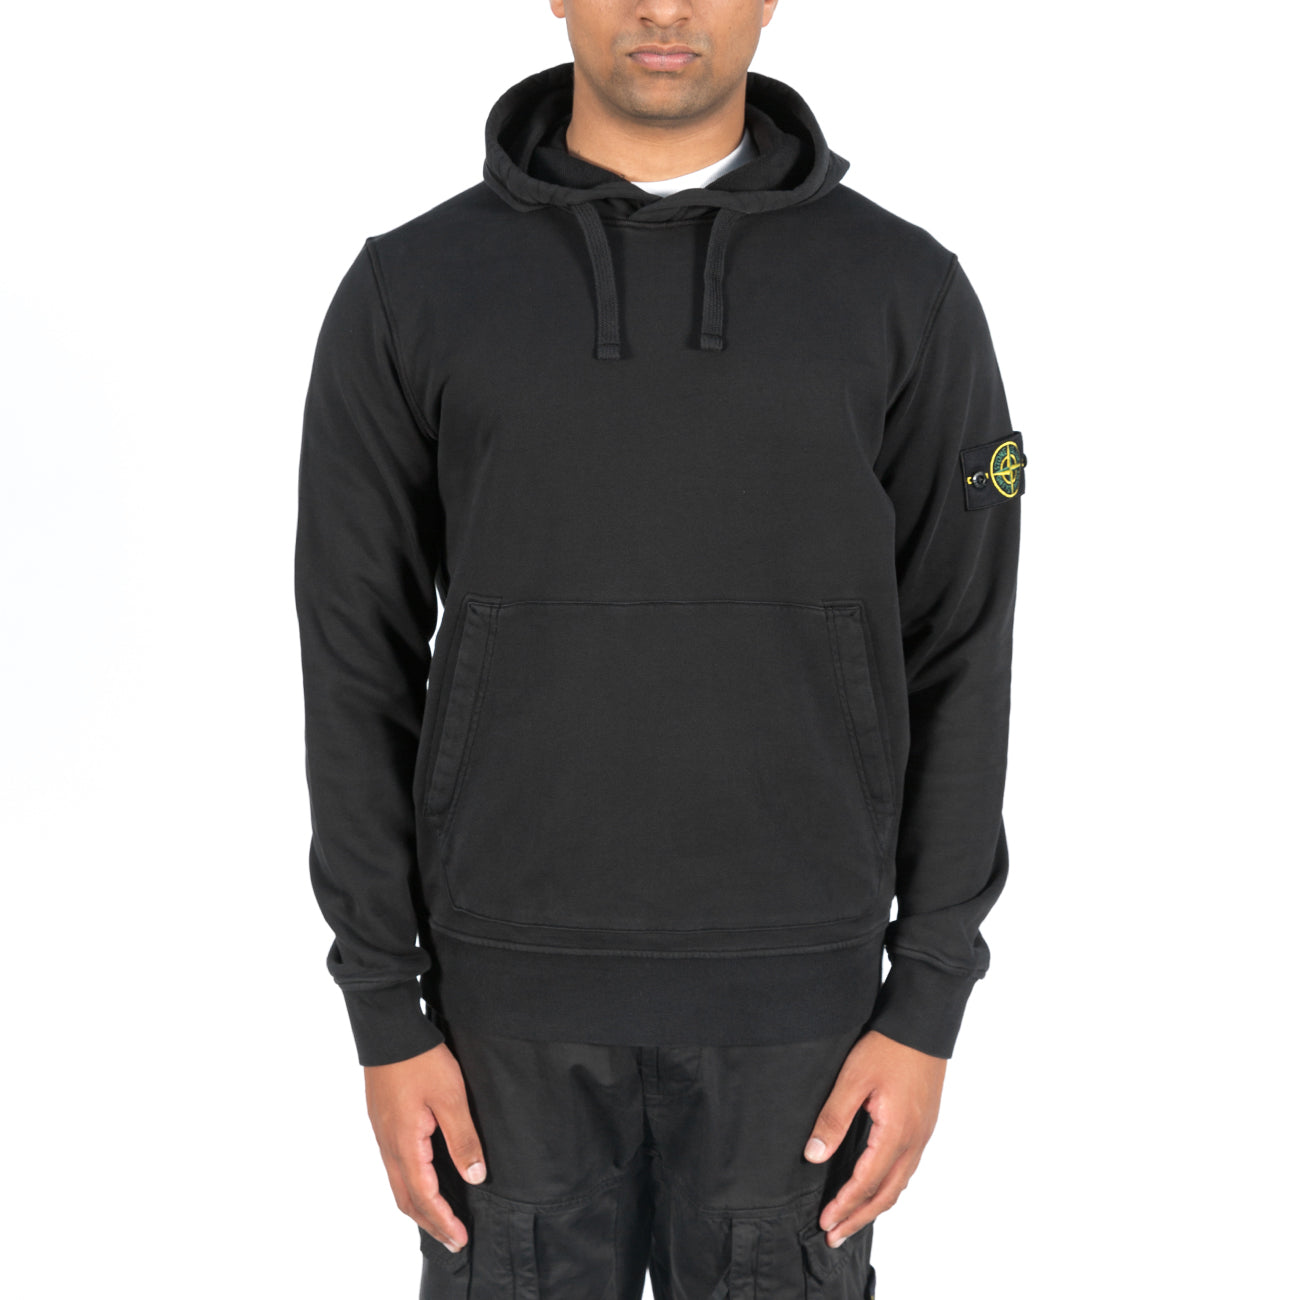 Sweatshirt Hooded Brushed - Black 2977